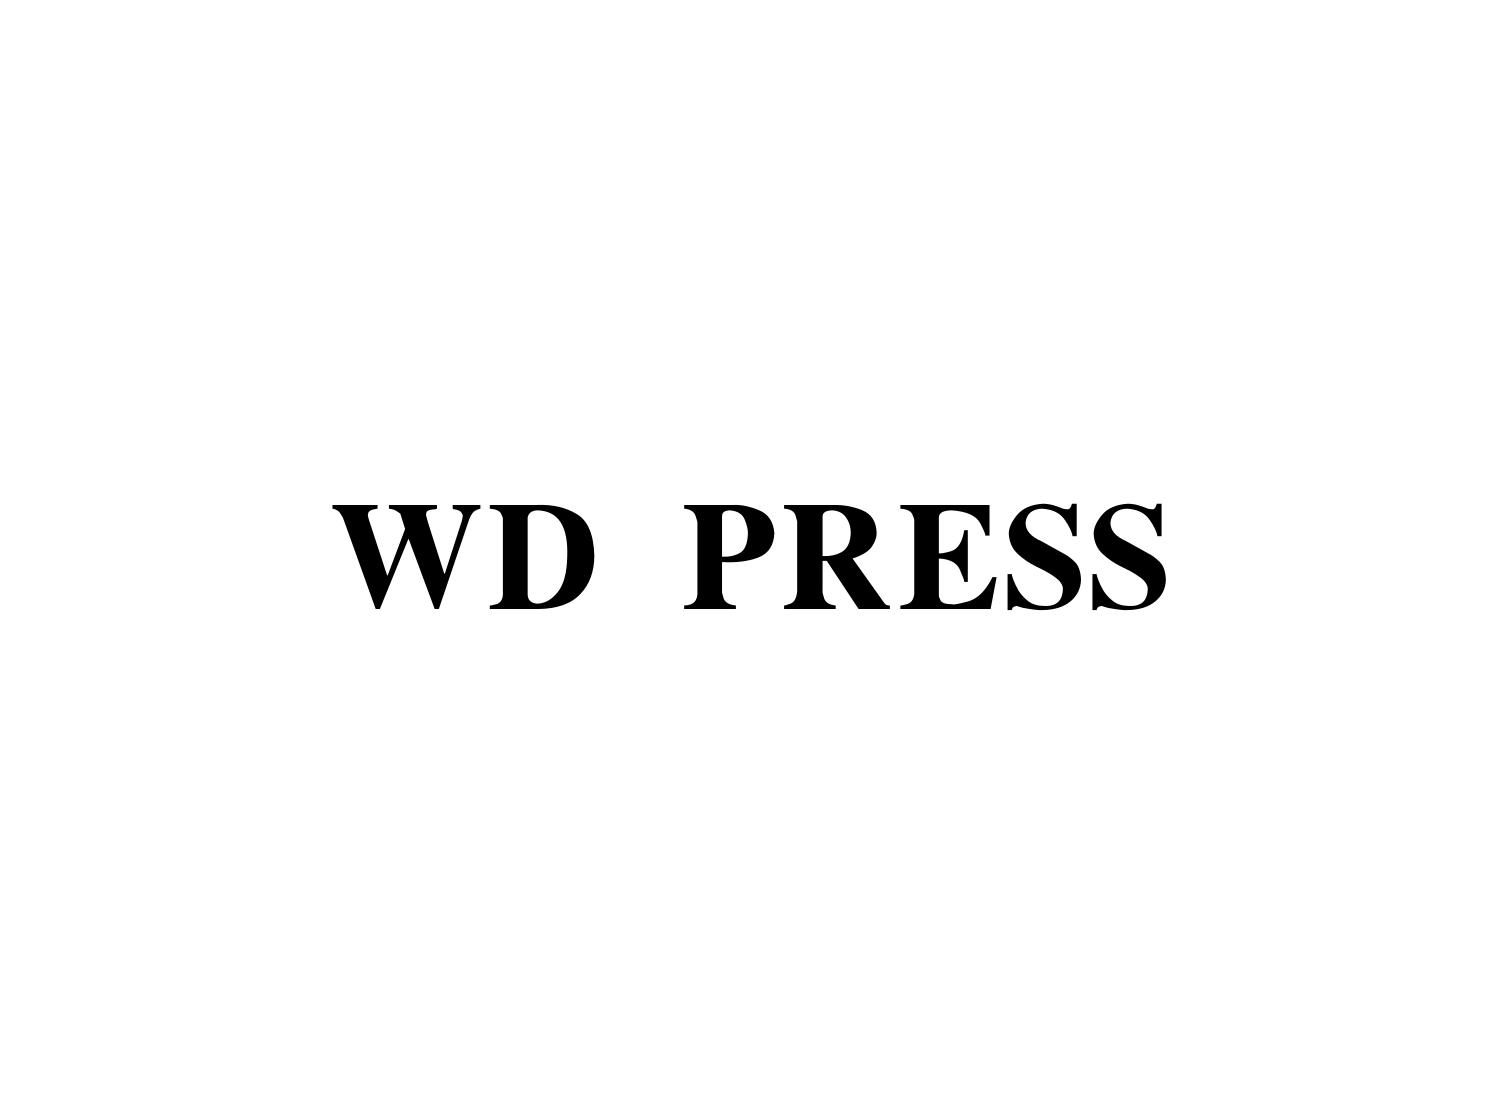 WD PRESS